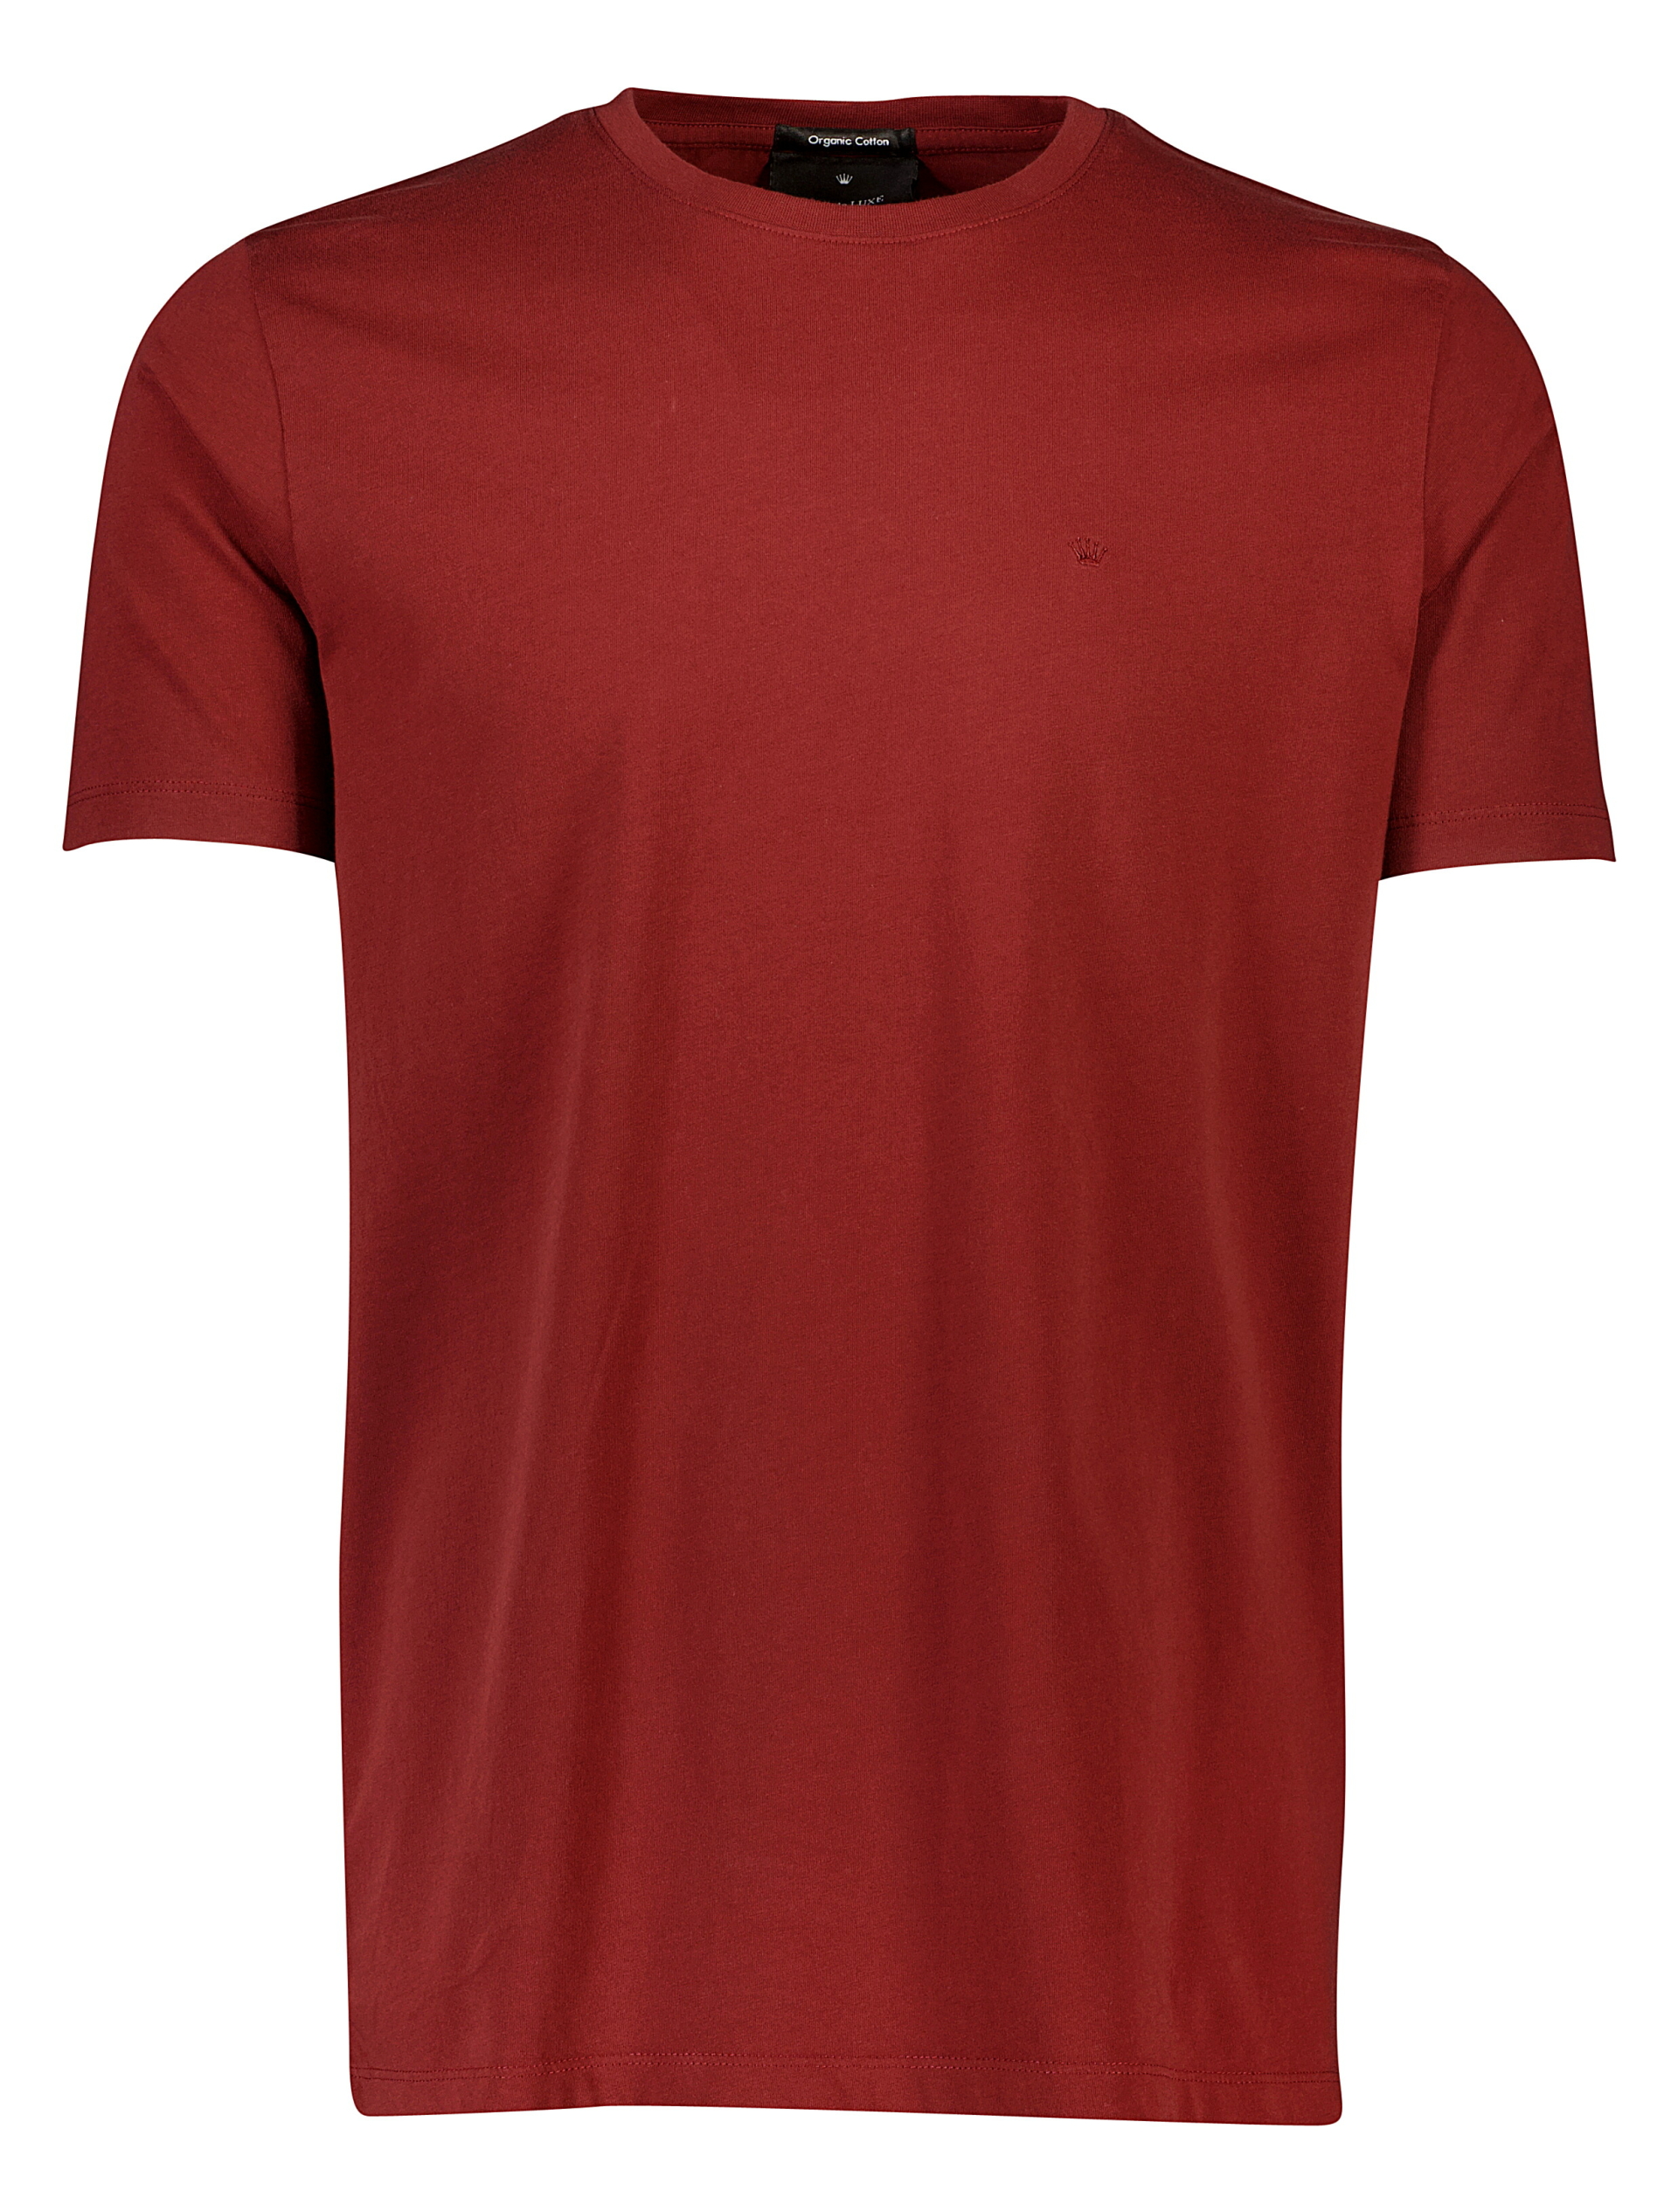 Junk de Luxe T-shirt rød / mid burgundy